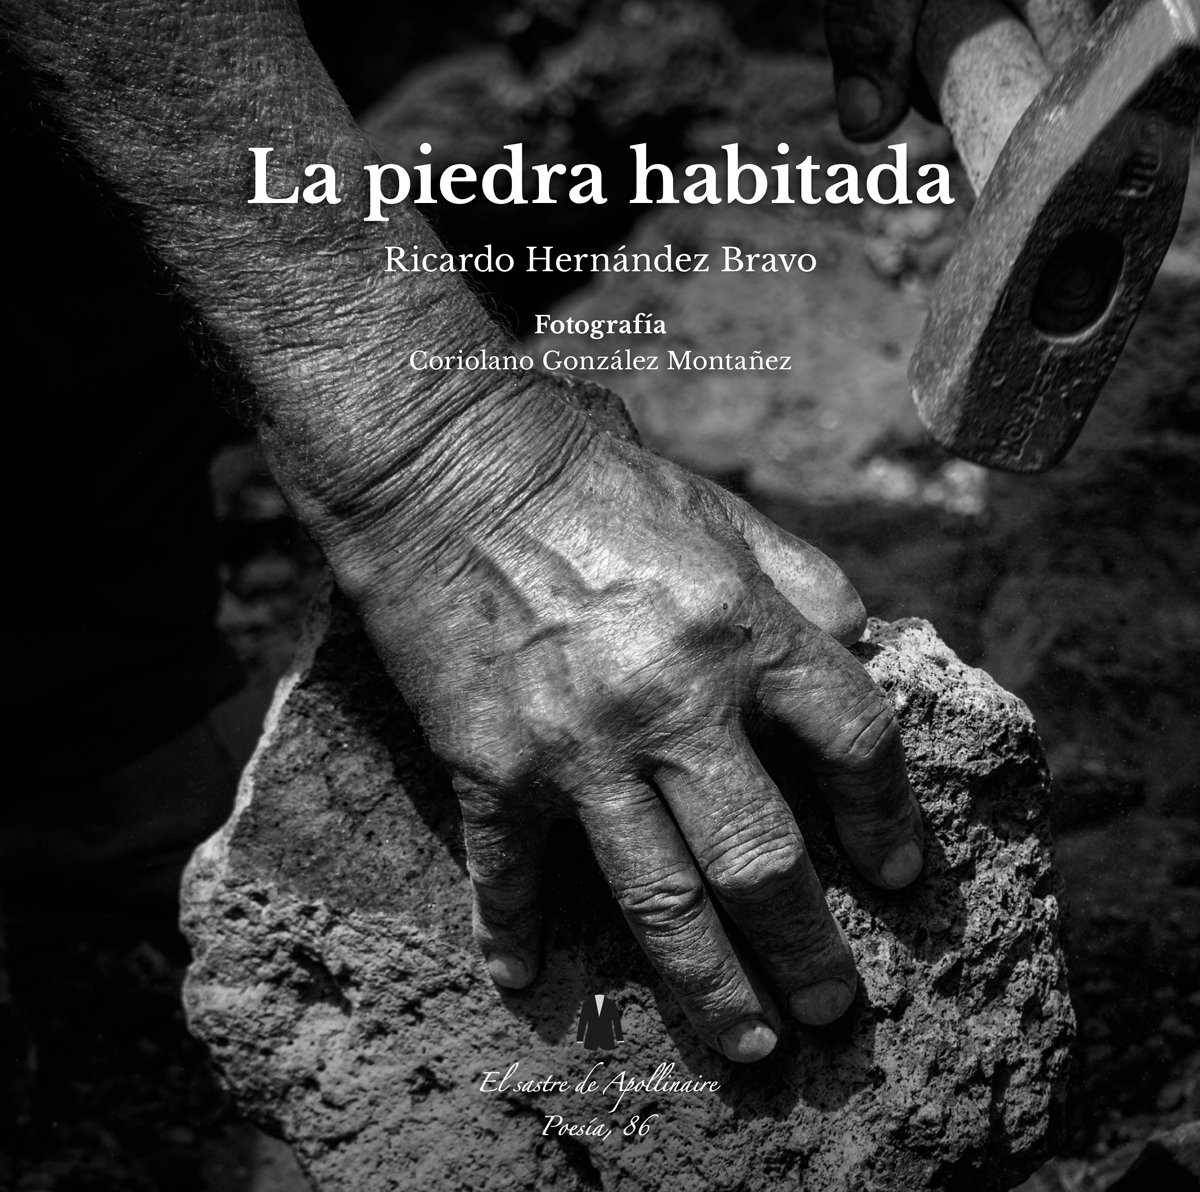 Presentación del libro "La Piedra habitada", de Ricardo Hernández Bravo